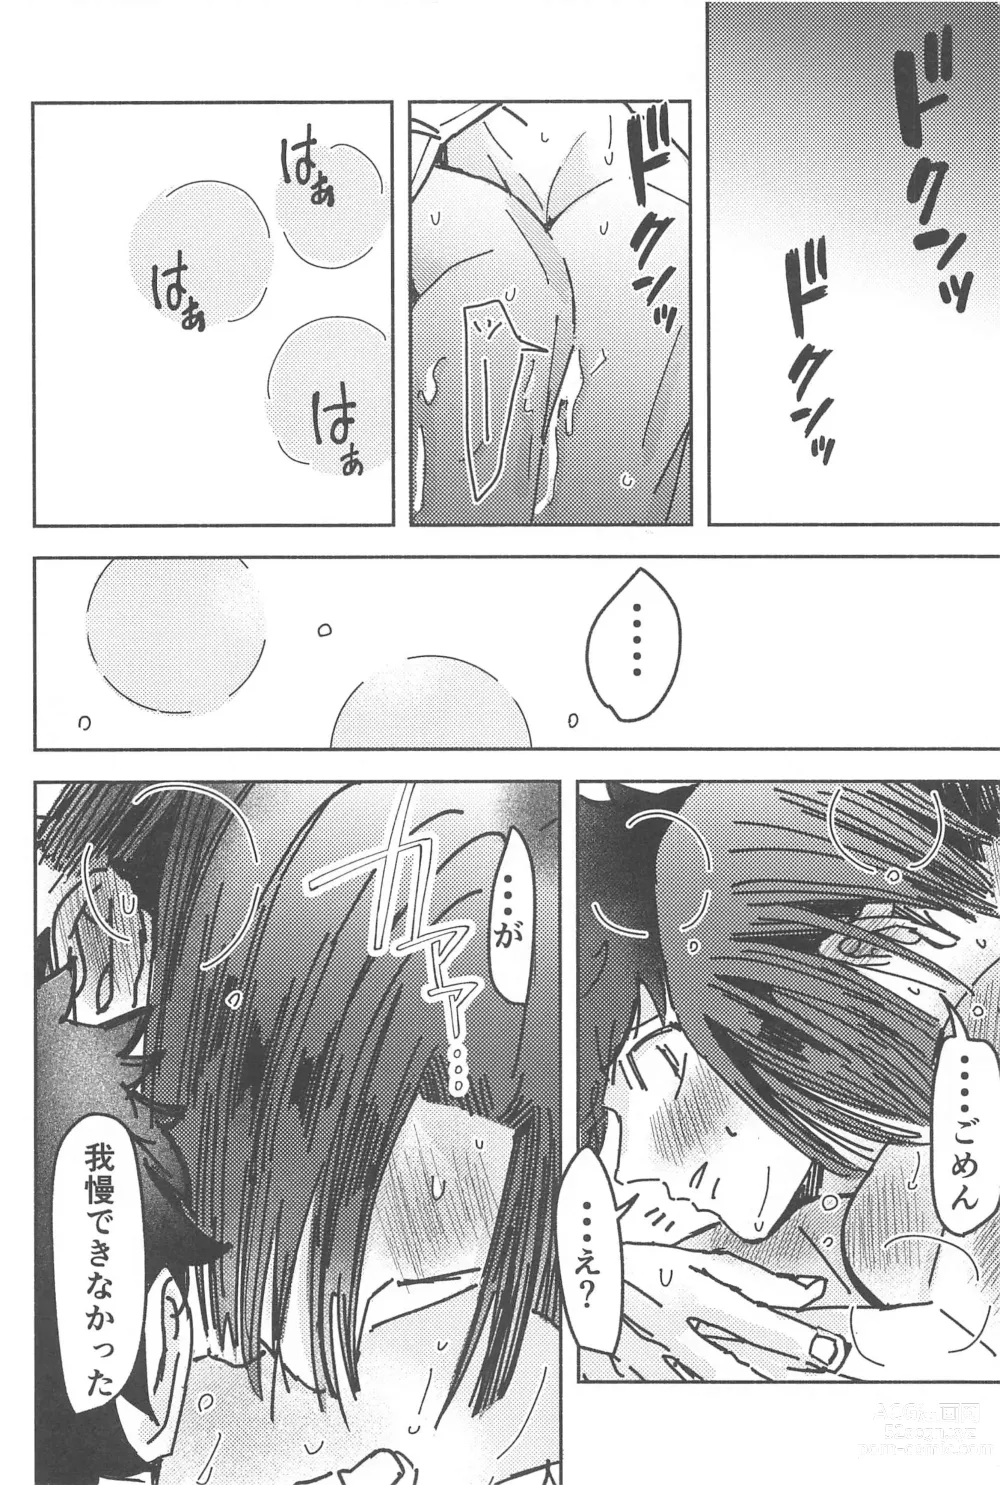 Page 57 of doujinshi Wakareyou natte  nante Iwanai de